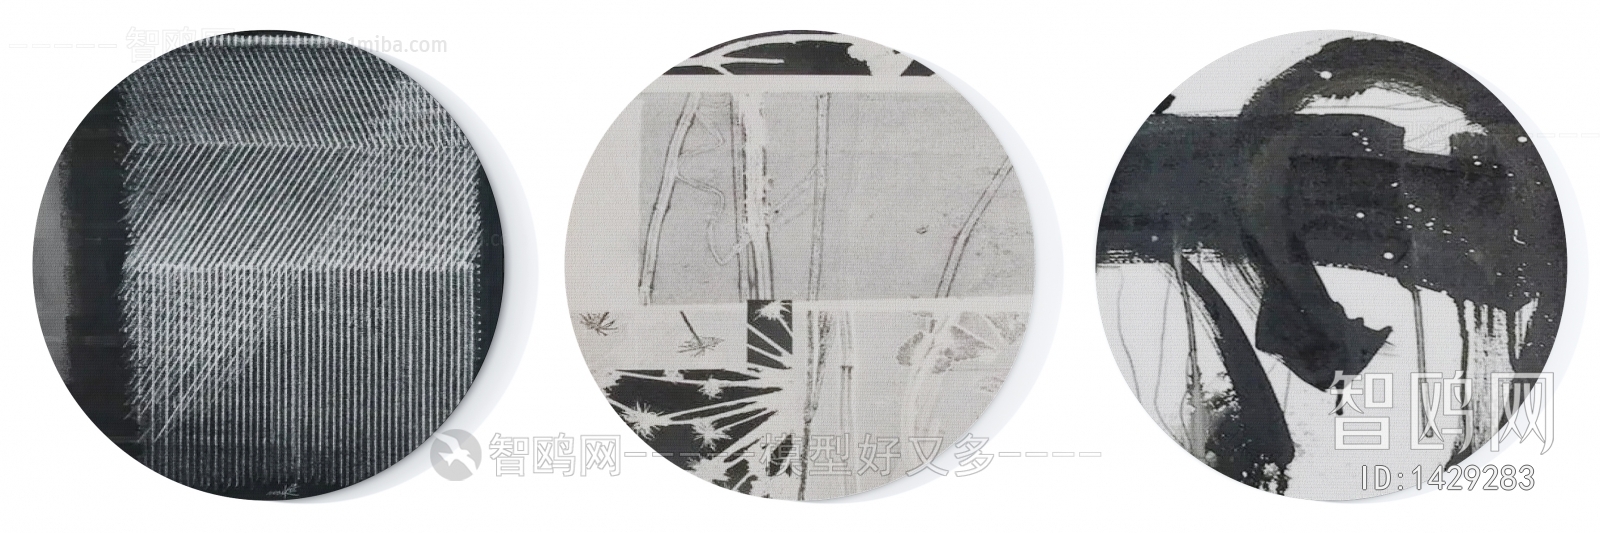 现代黑白灰抽象图案圆形地毯组合